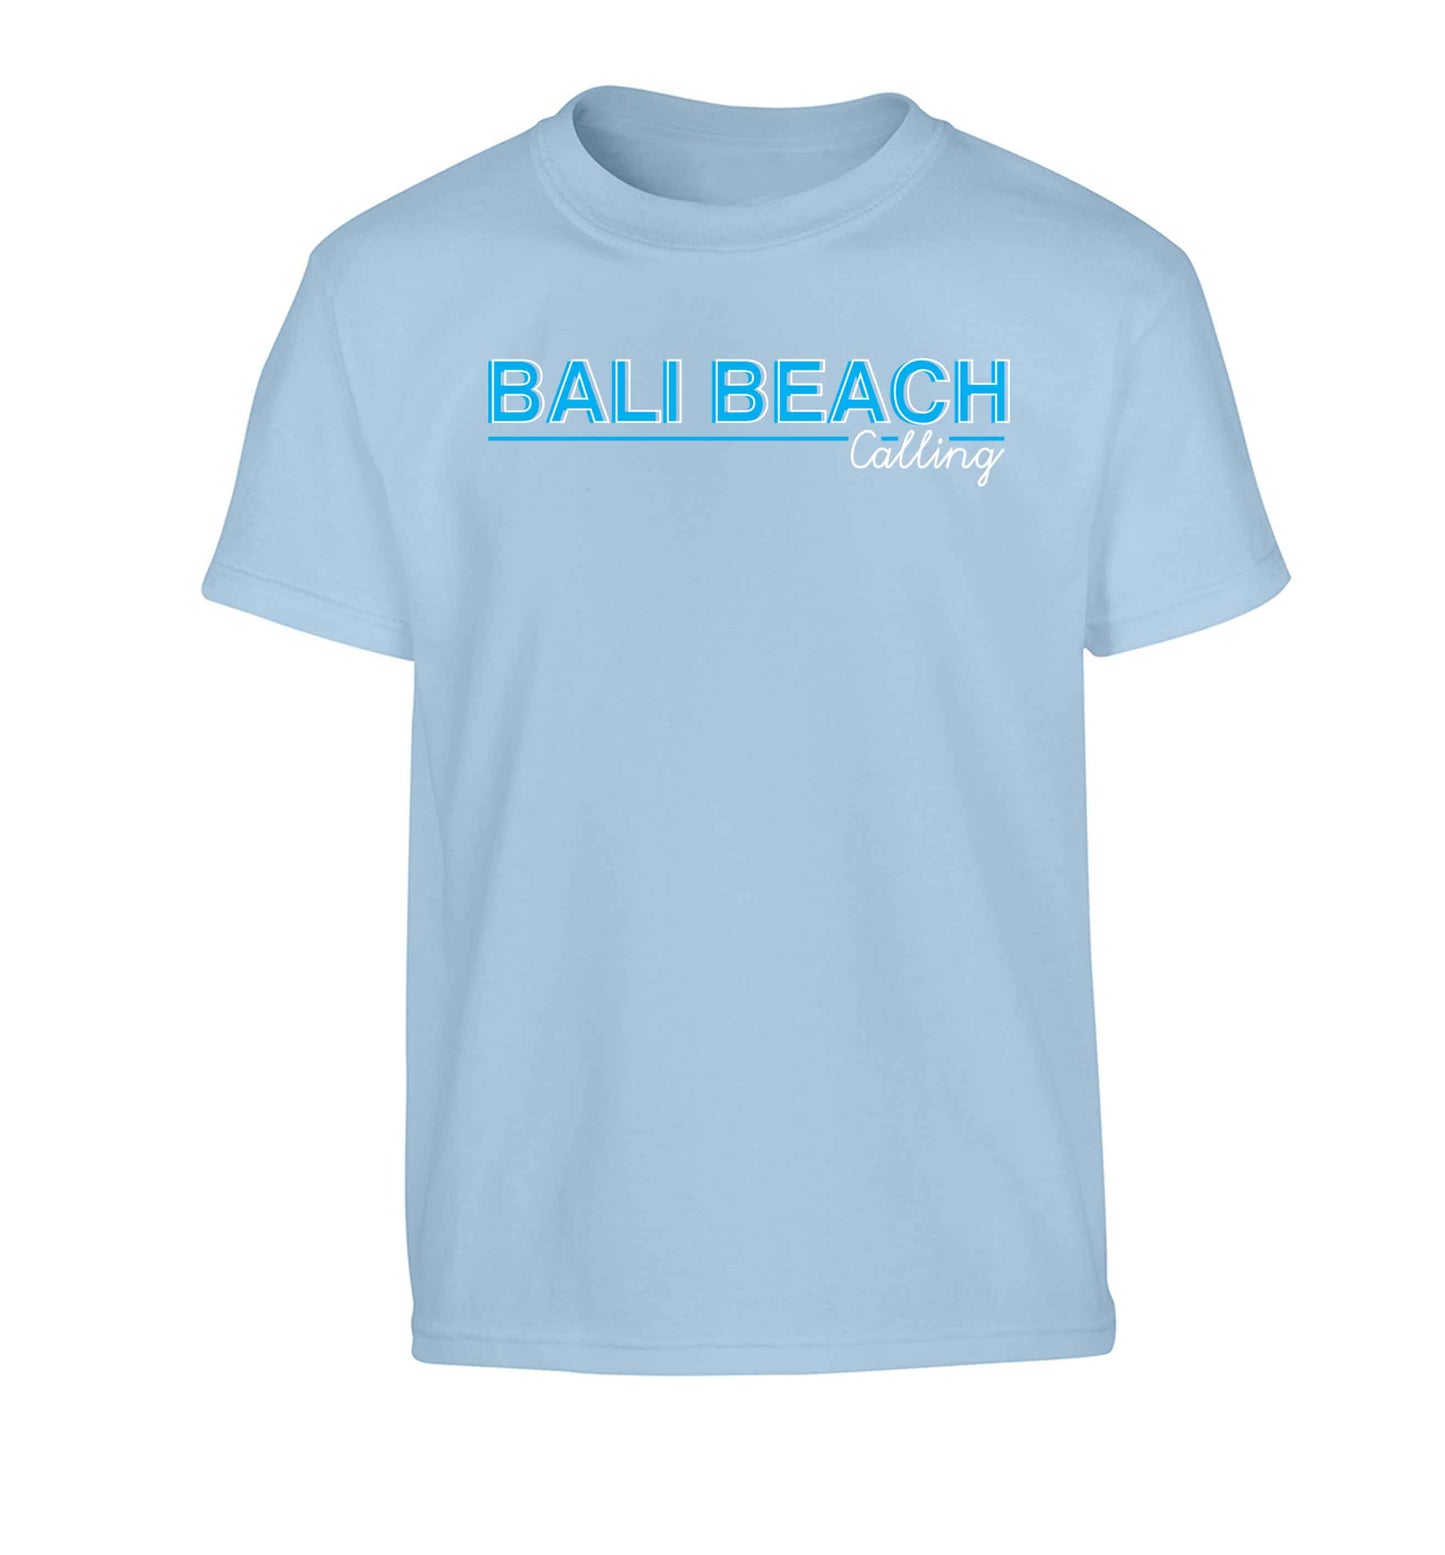 Bali beach calling Children's light blue Tshirt 12-13 Years